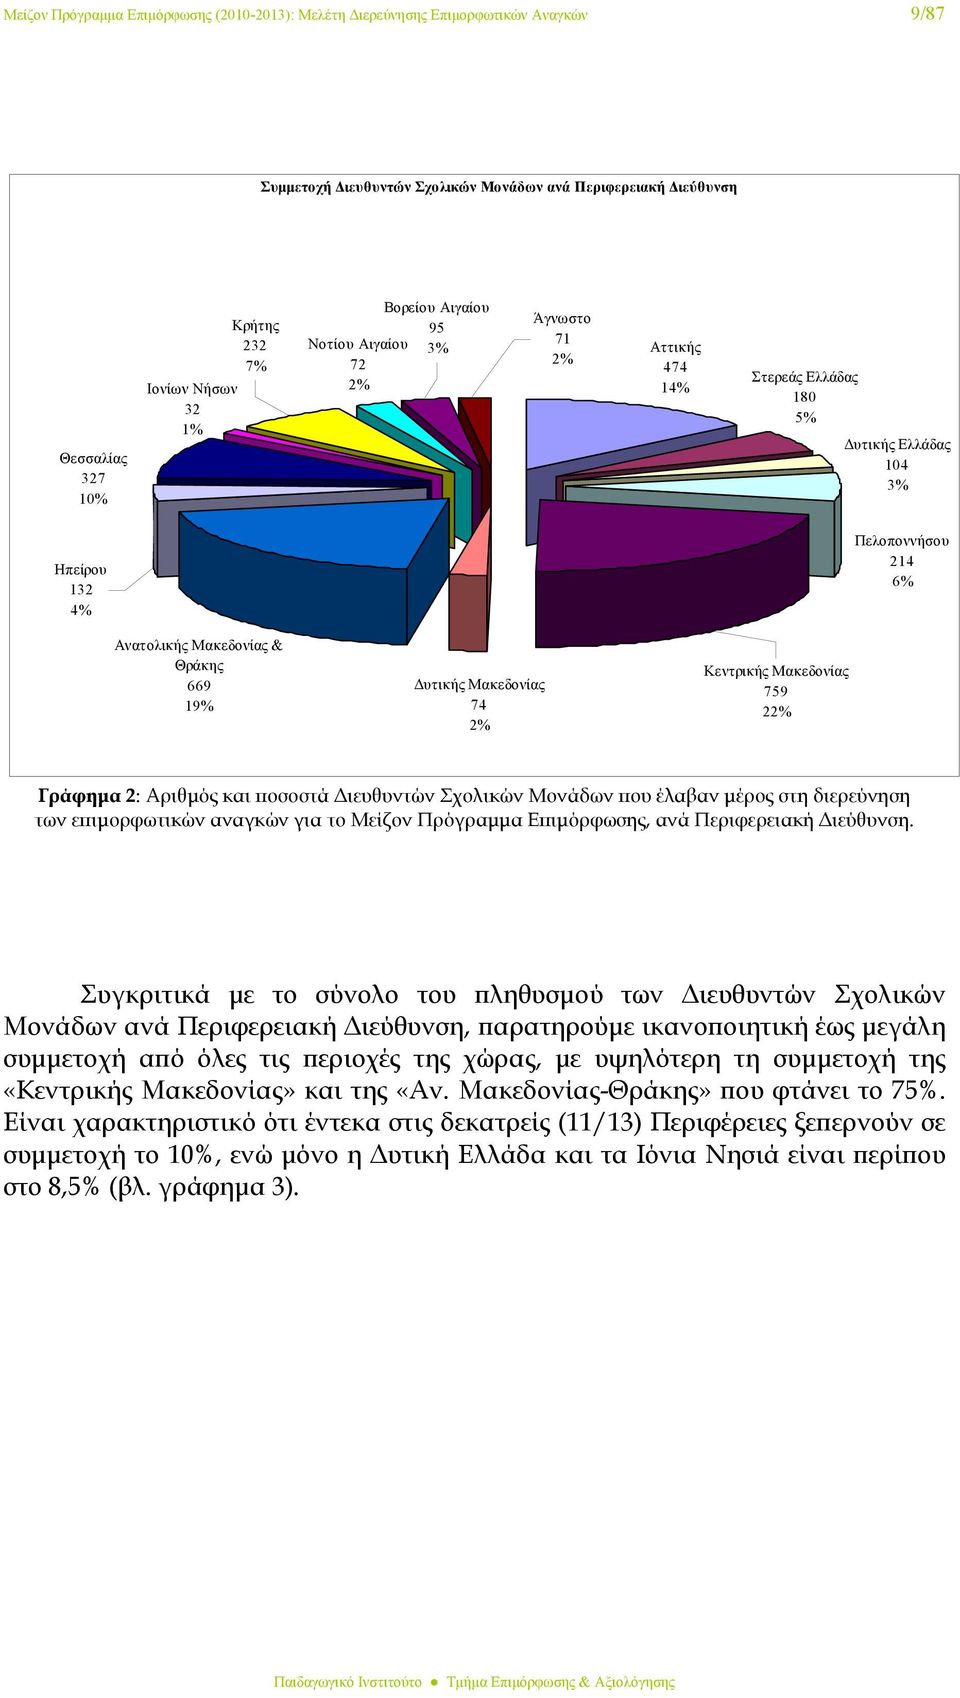 Δυτικής Μακεδονίας 74 2% Κεντρικής Μακεδονίας 759 22% Γράφημα 2: Αριθμός και ποσοστά Διευθυντών Σχολικών Μονάδων που έλαβαν μέρος στη διερεύνηση των επιμορφωτικών αναγκών για το Μείζον Πρόγραμμα